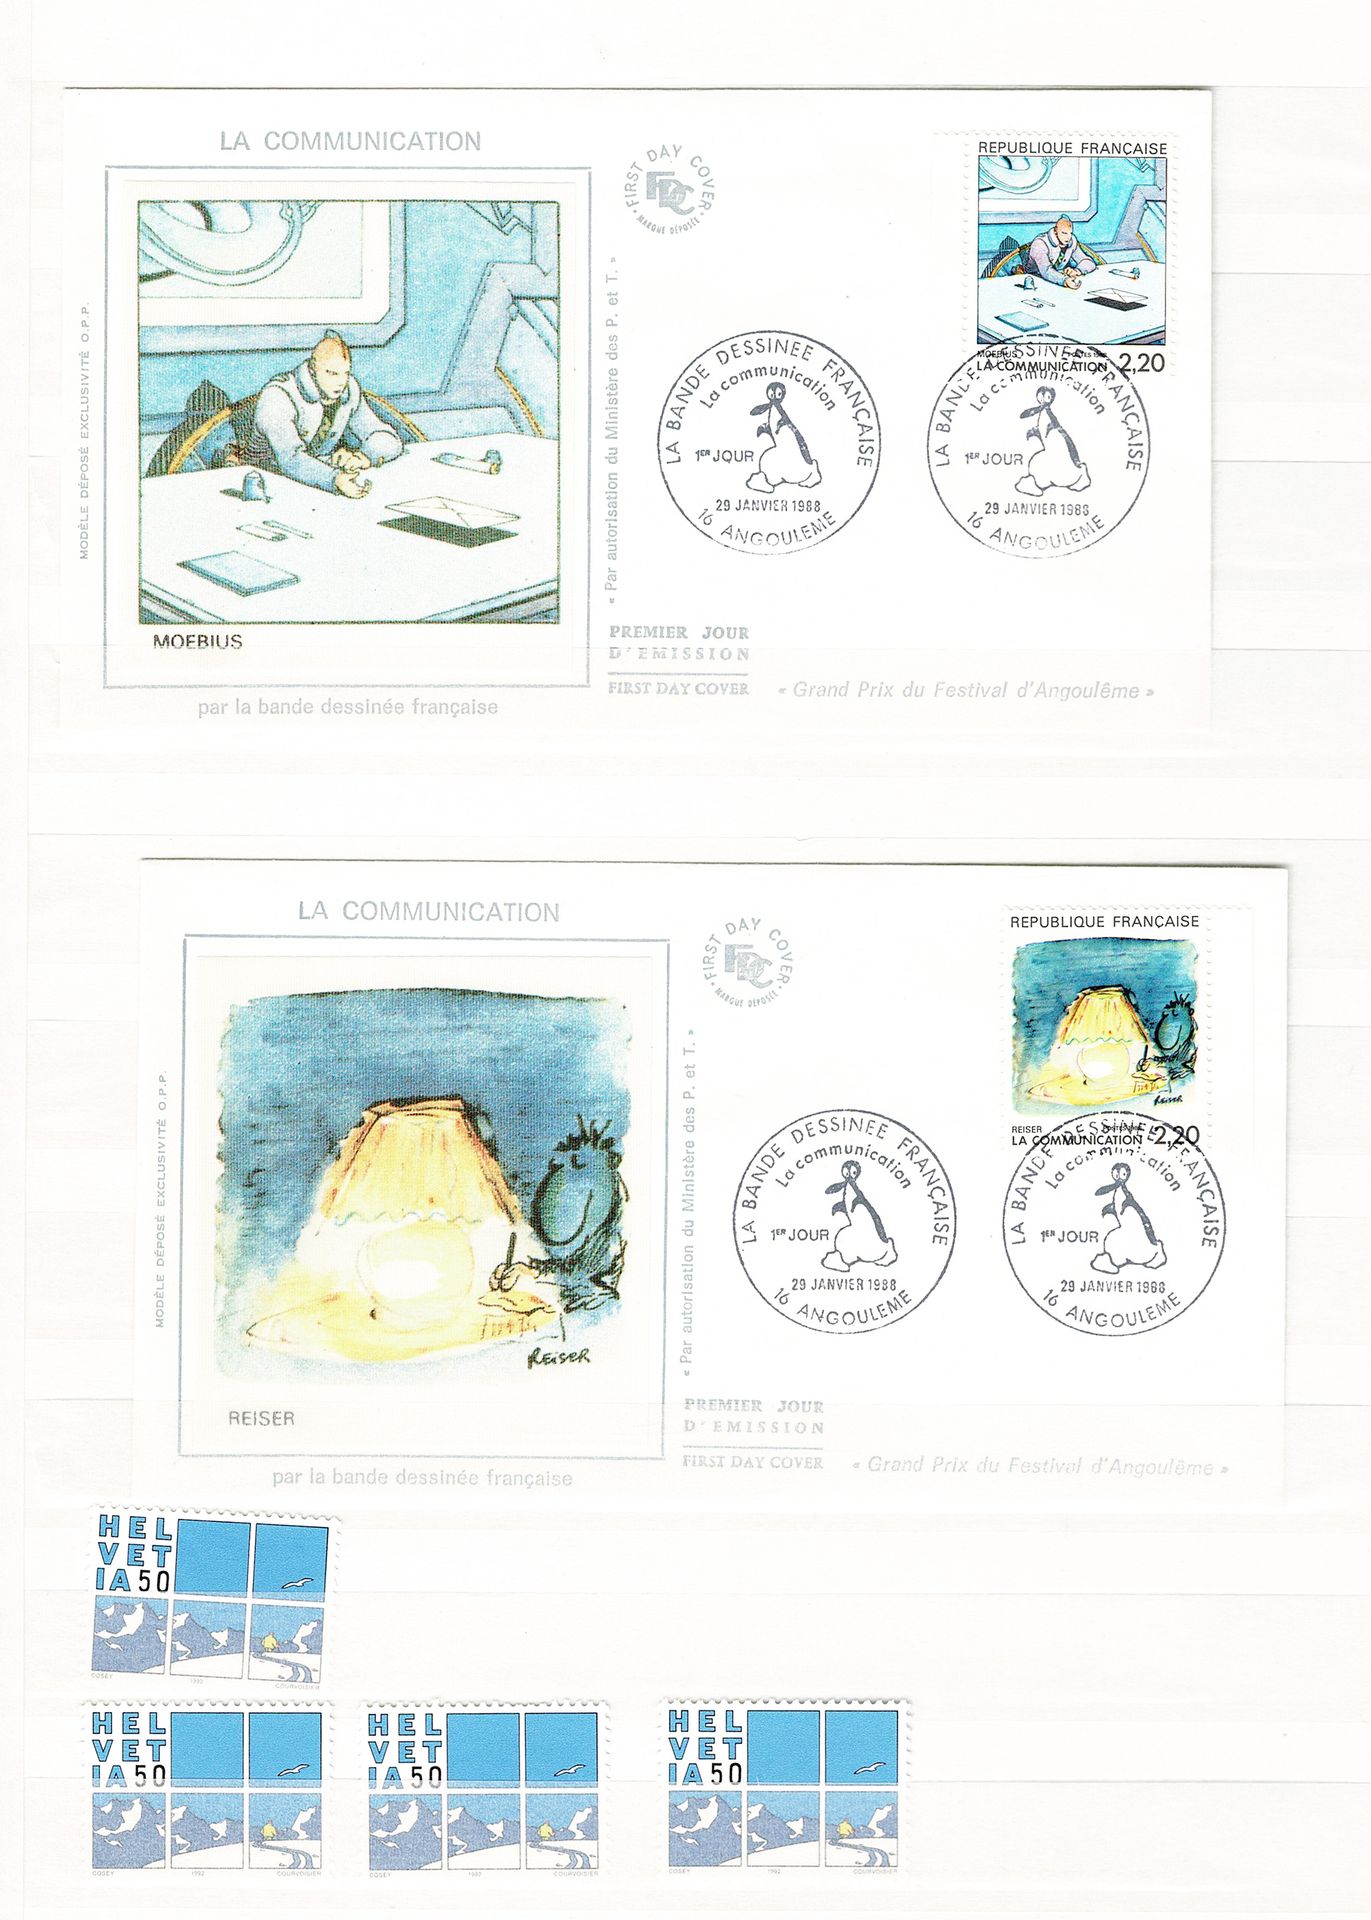 DIVERS 
Conjunto de más de 350 sellos sobre el tema del cómic.